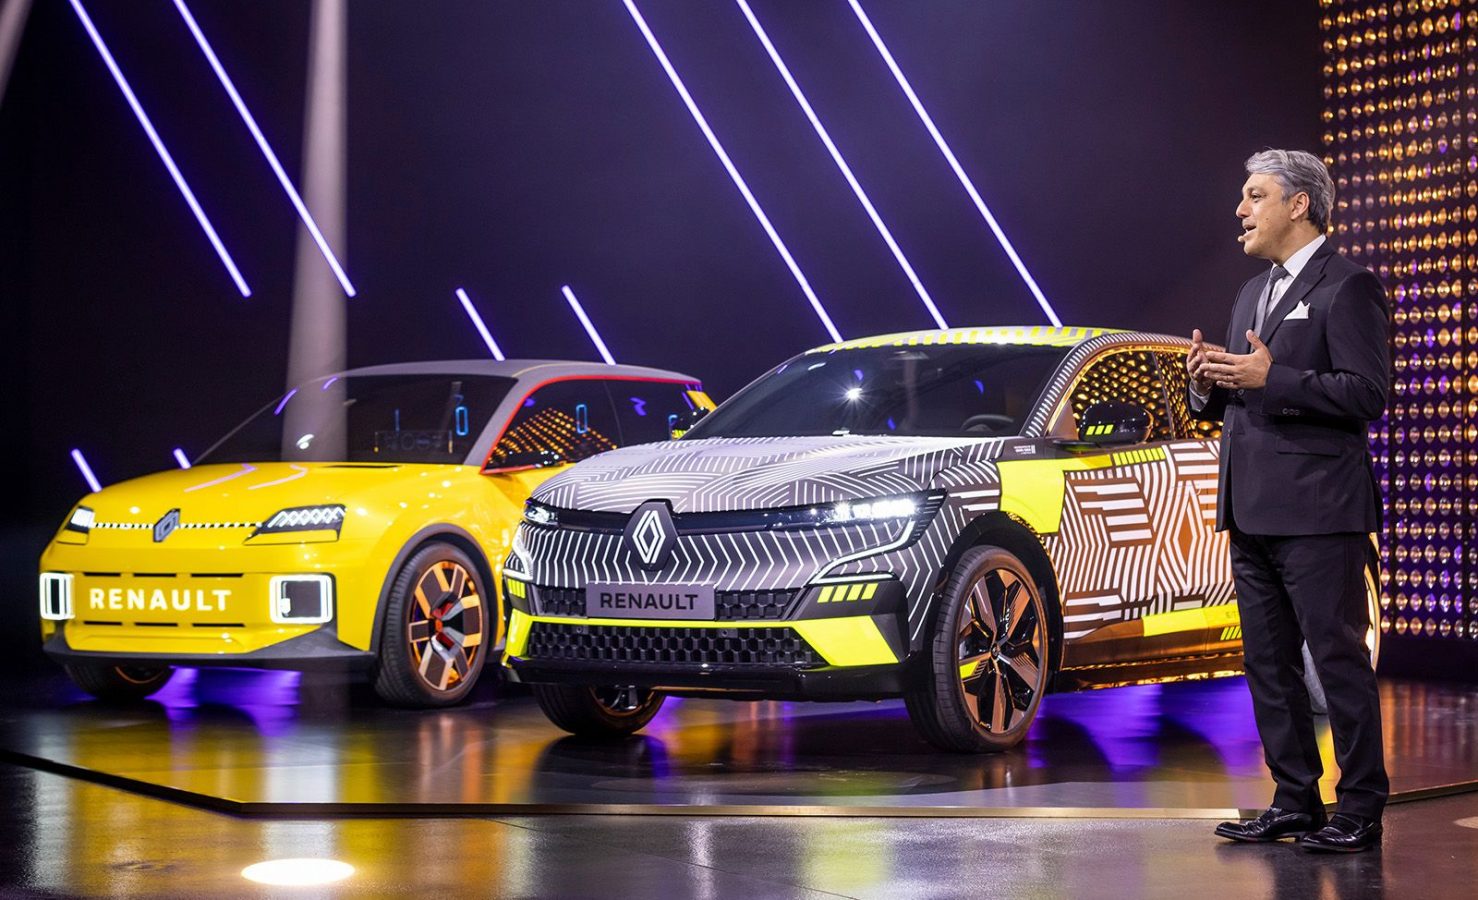 El futuro de Renault: R5 y R4, 8 nuevos eléctricos más para todo el Grupo y gigafábricas para sus baterías